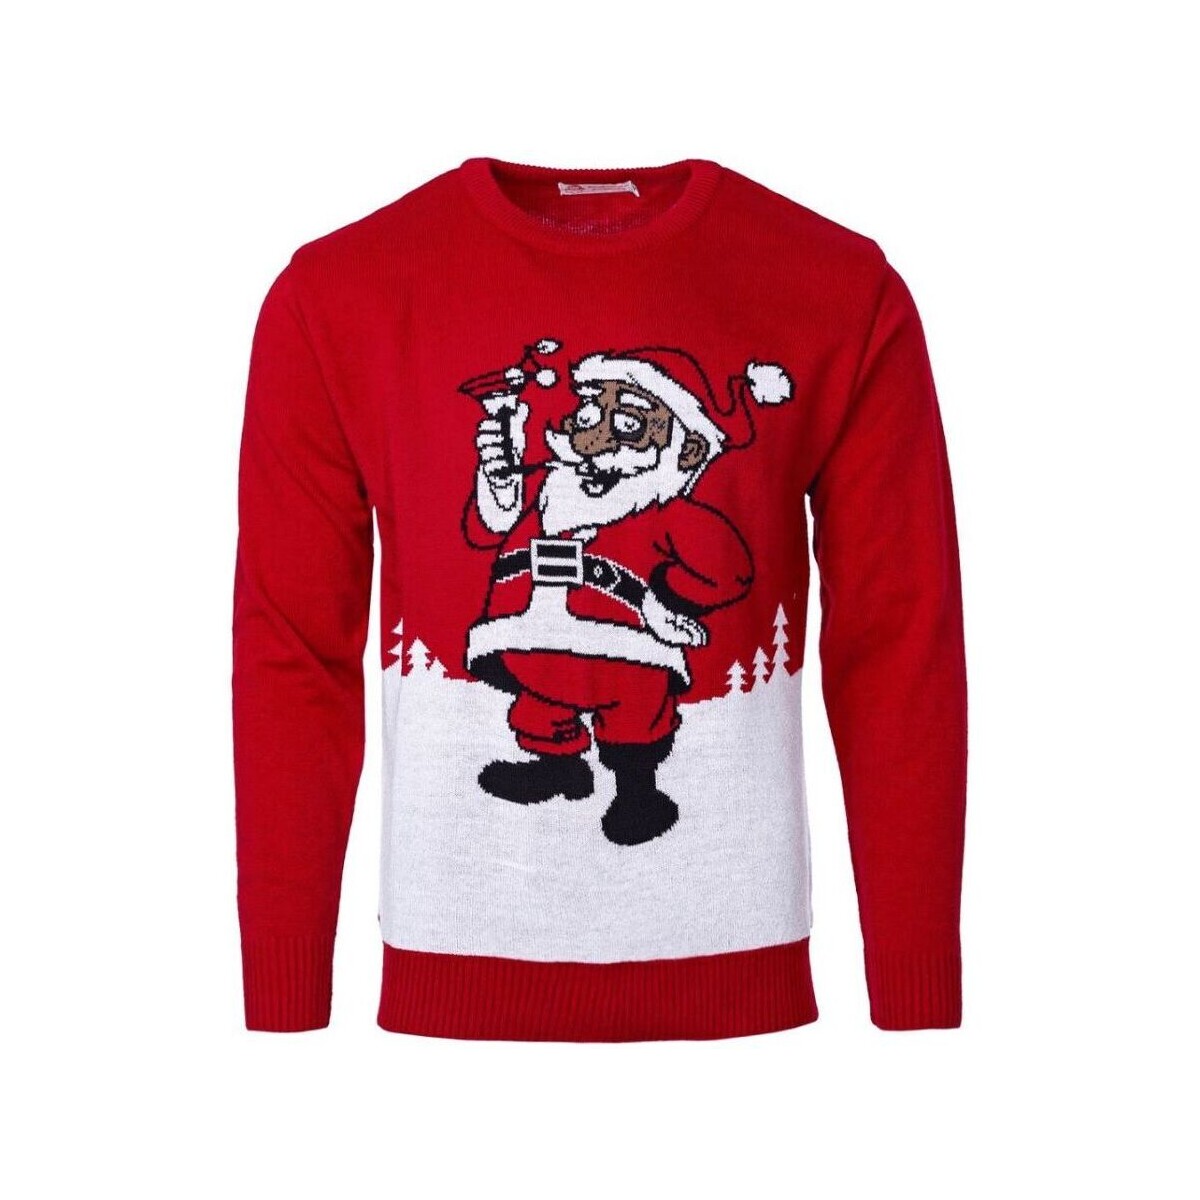 Textil Svetry Wayfarer Vánoční svetr Santa červená Červená